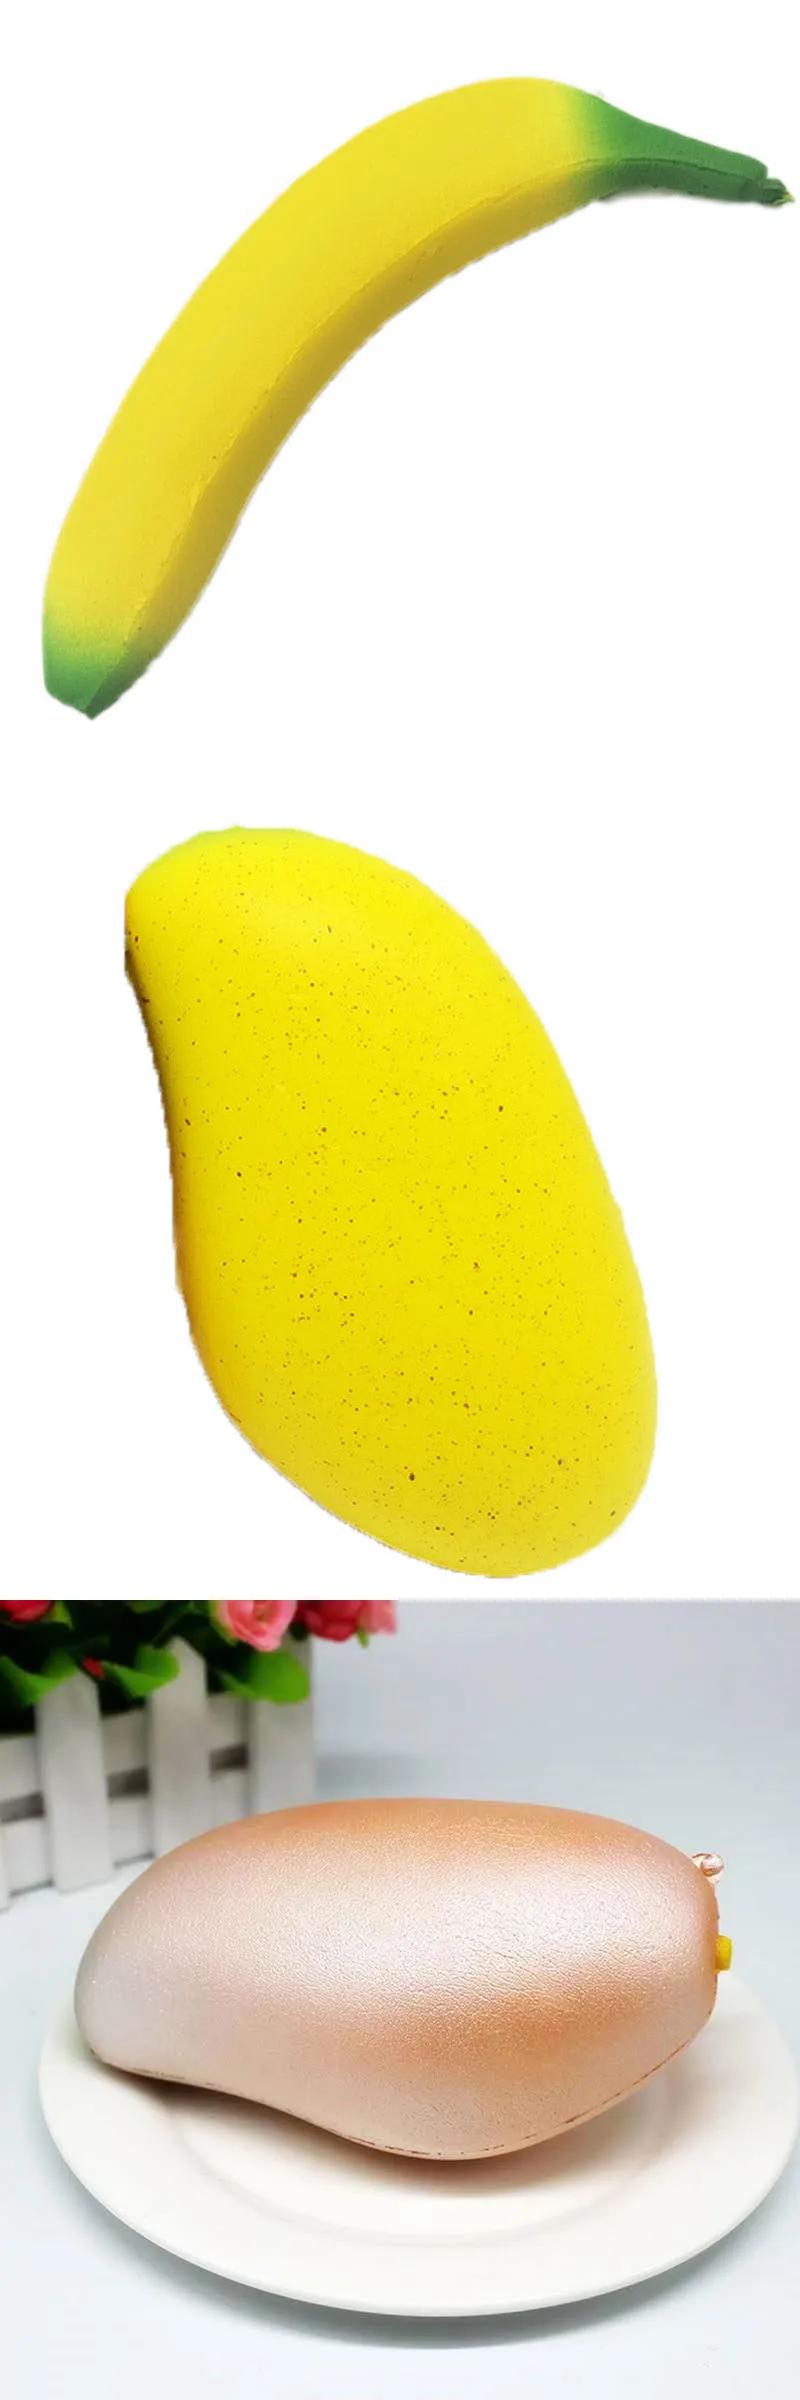 Diy кислый лимон апельсин антистрессовые мягкие игрушки имитация фруктовая серия медленное увеличение снятия стресса забавная игрушка для